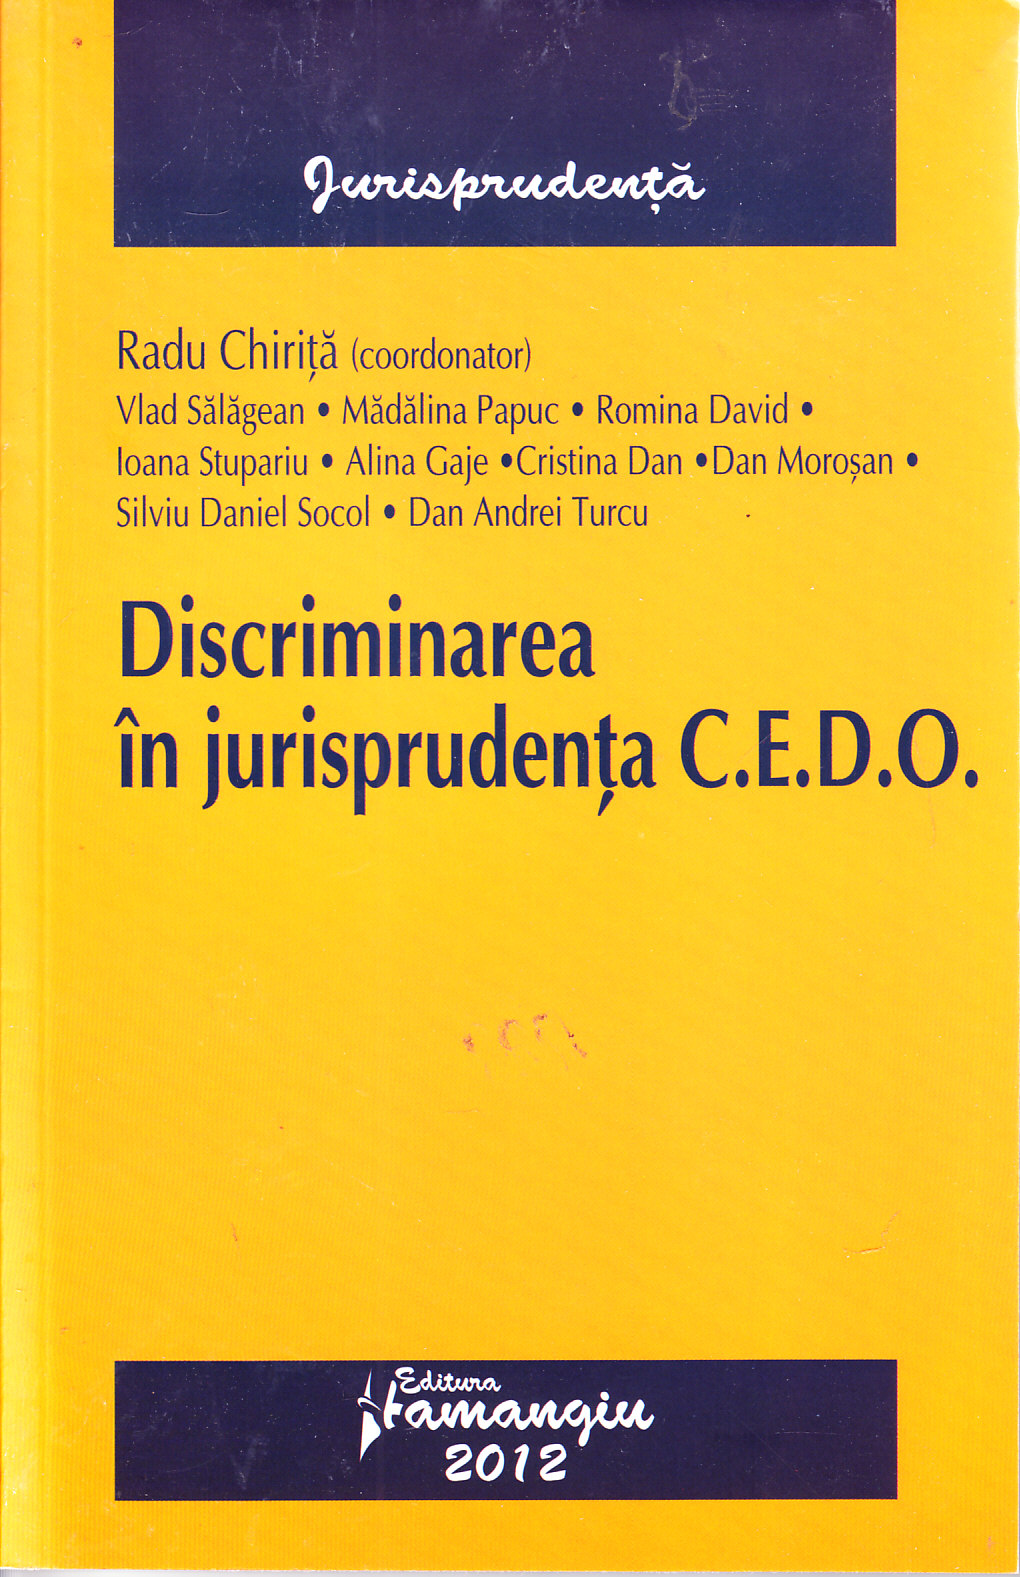 Discriminarea in jurisprudenta Cedo - Radu Chirita